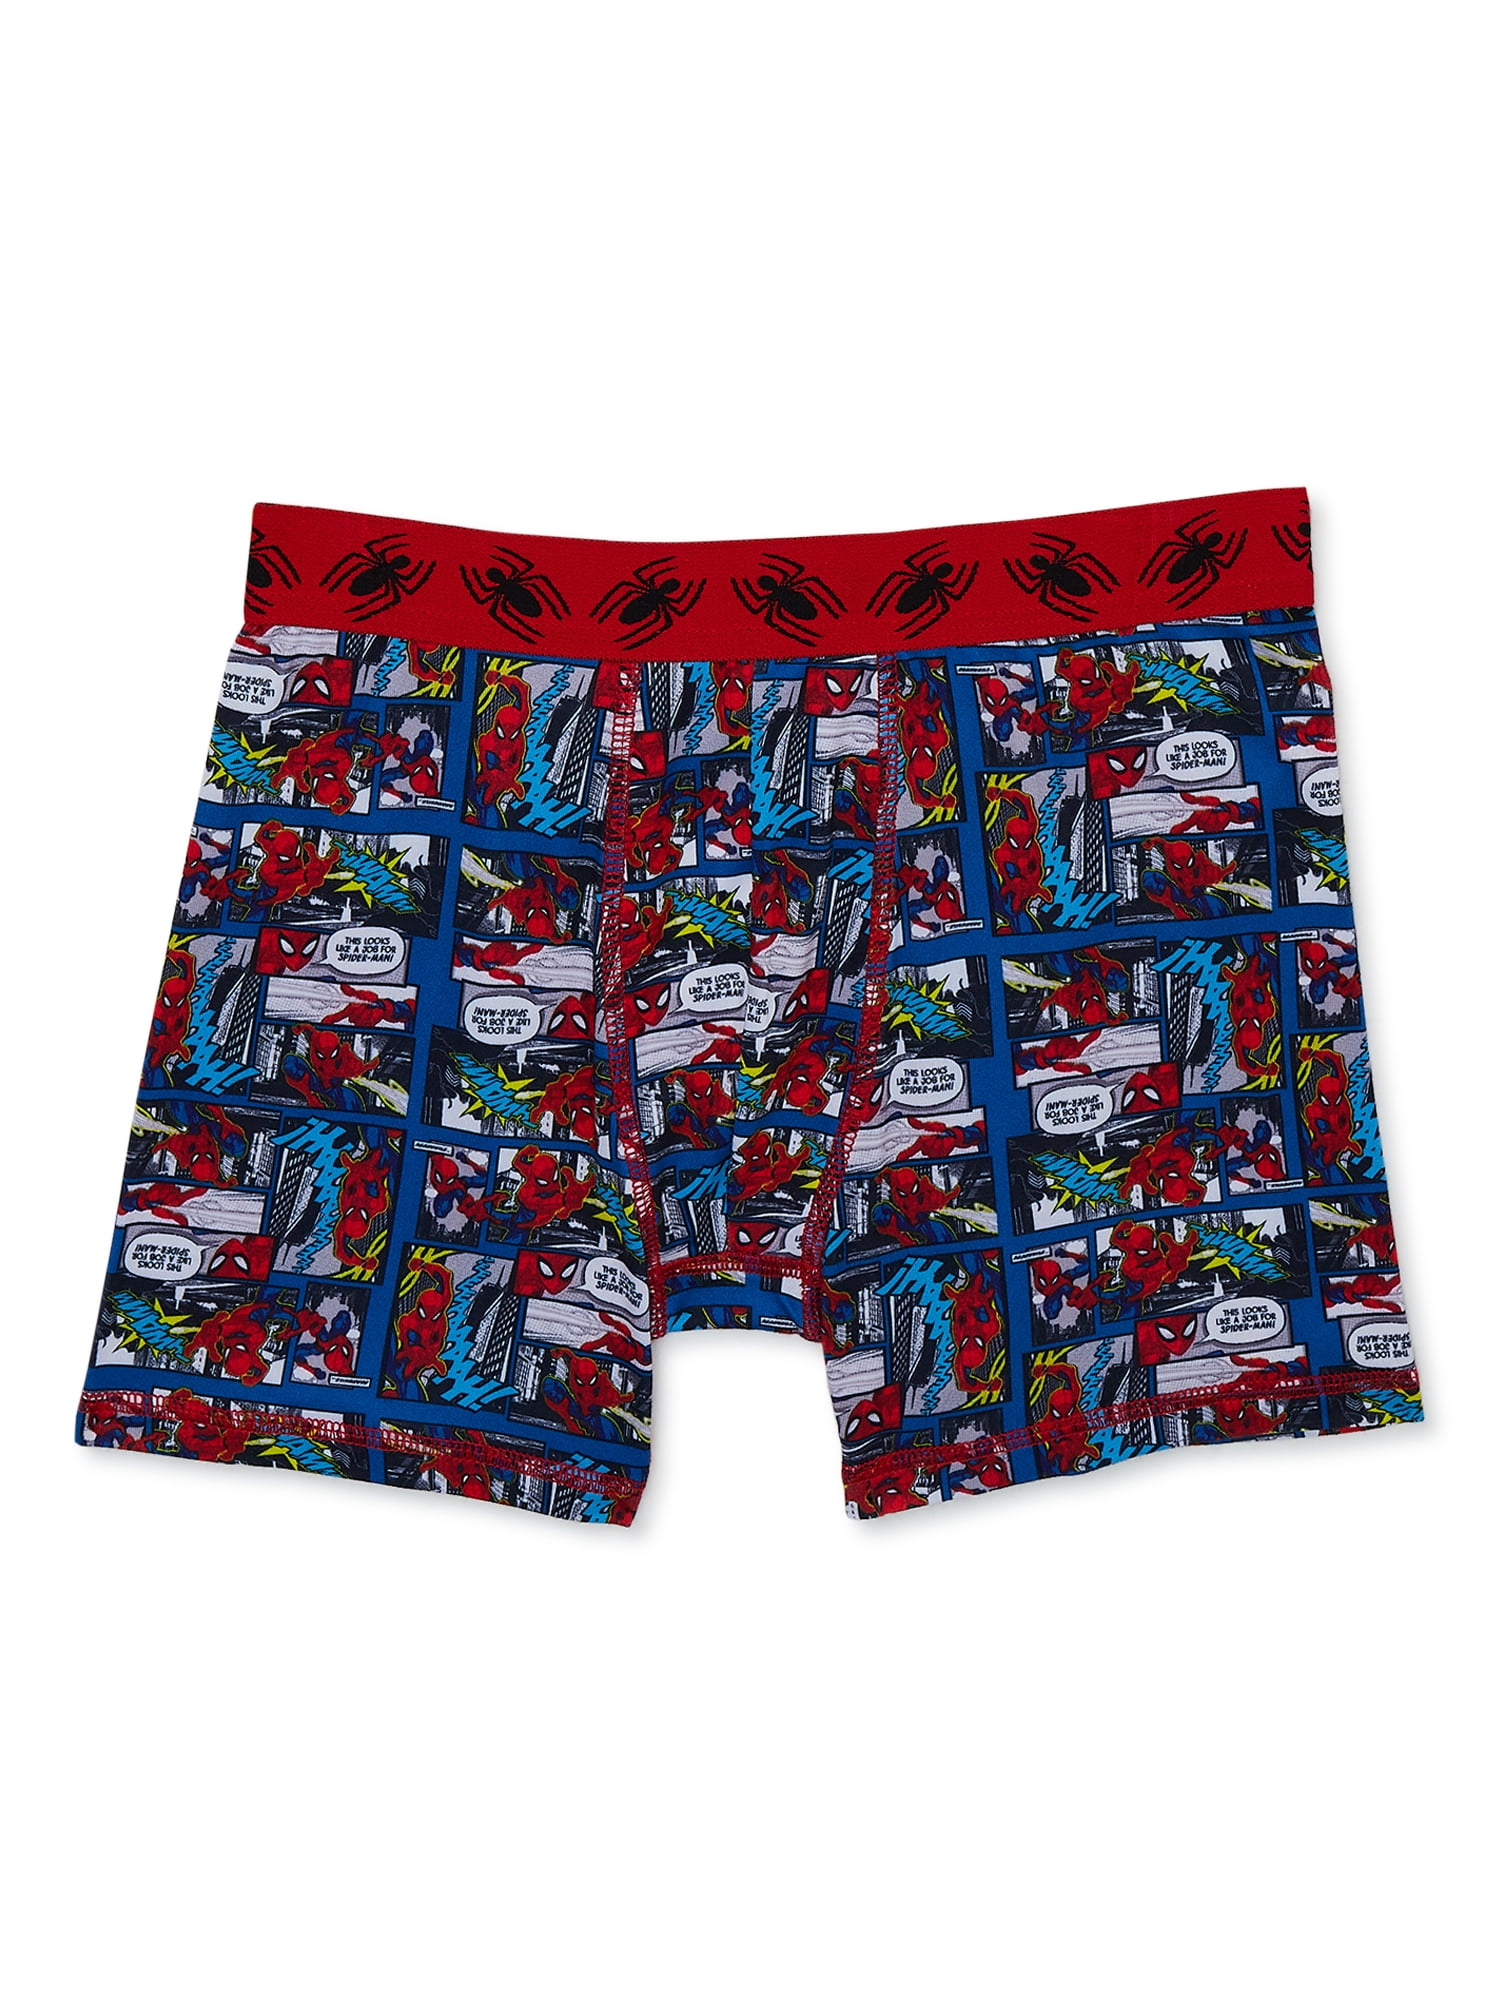 Marvel Boys Spider Man Boxer Briefs Underwear, 4 Pack, Sizes 4